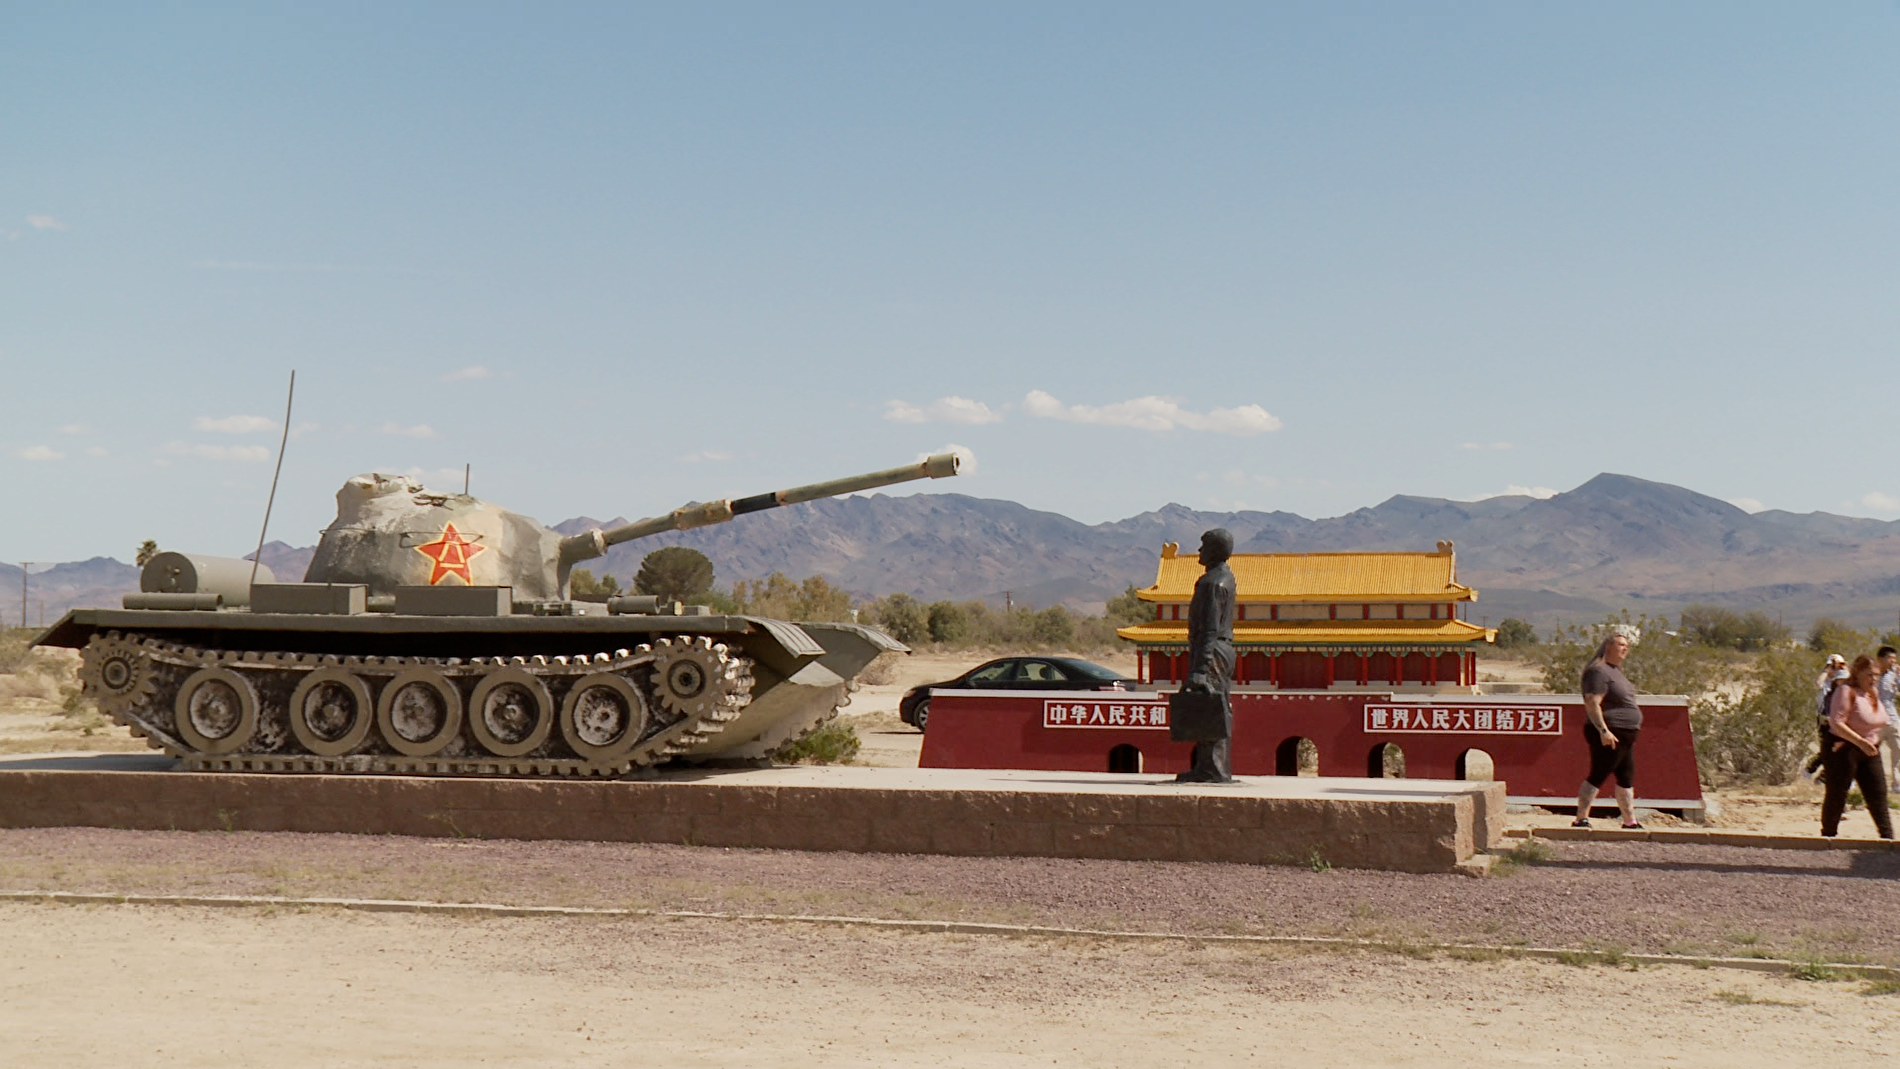 六四35周年前夕 南加州“坦克人”雕塑遭损毁